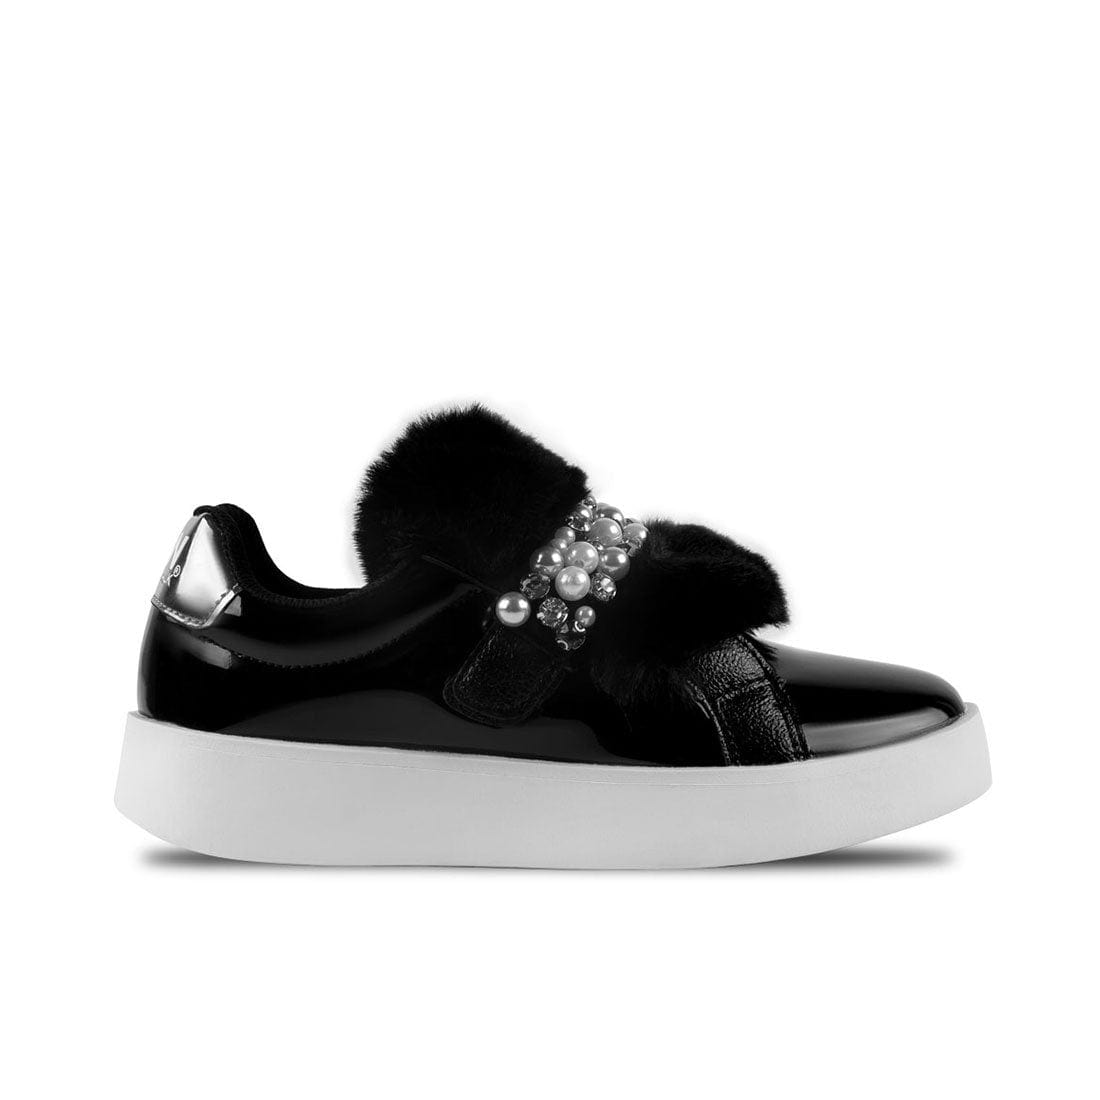 Sneakers Damsel Black Fur